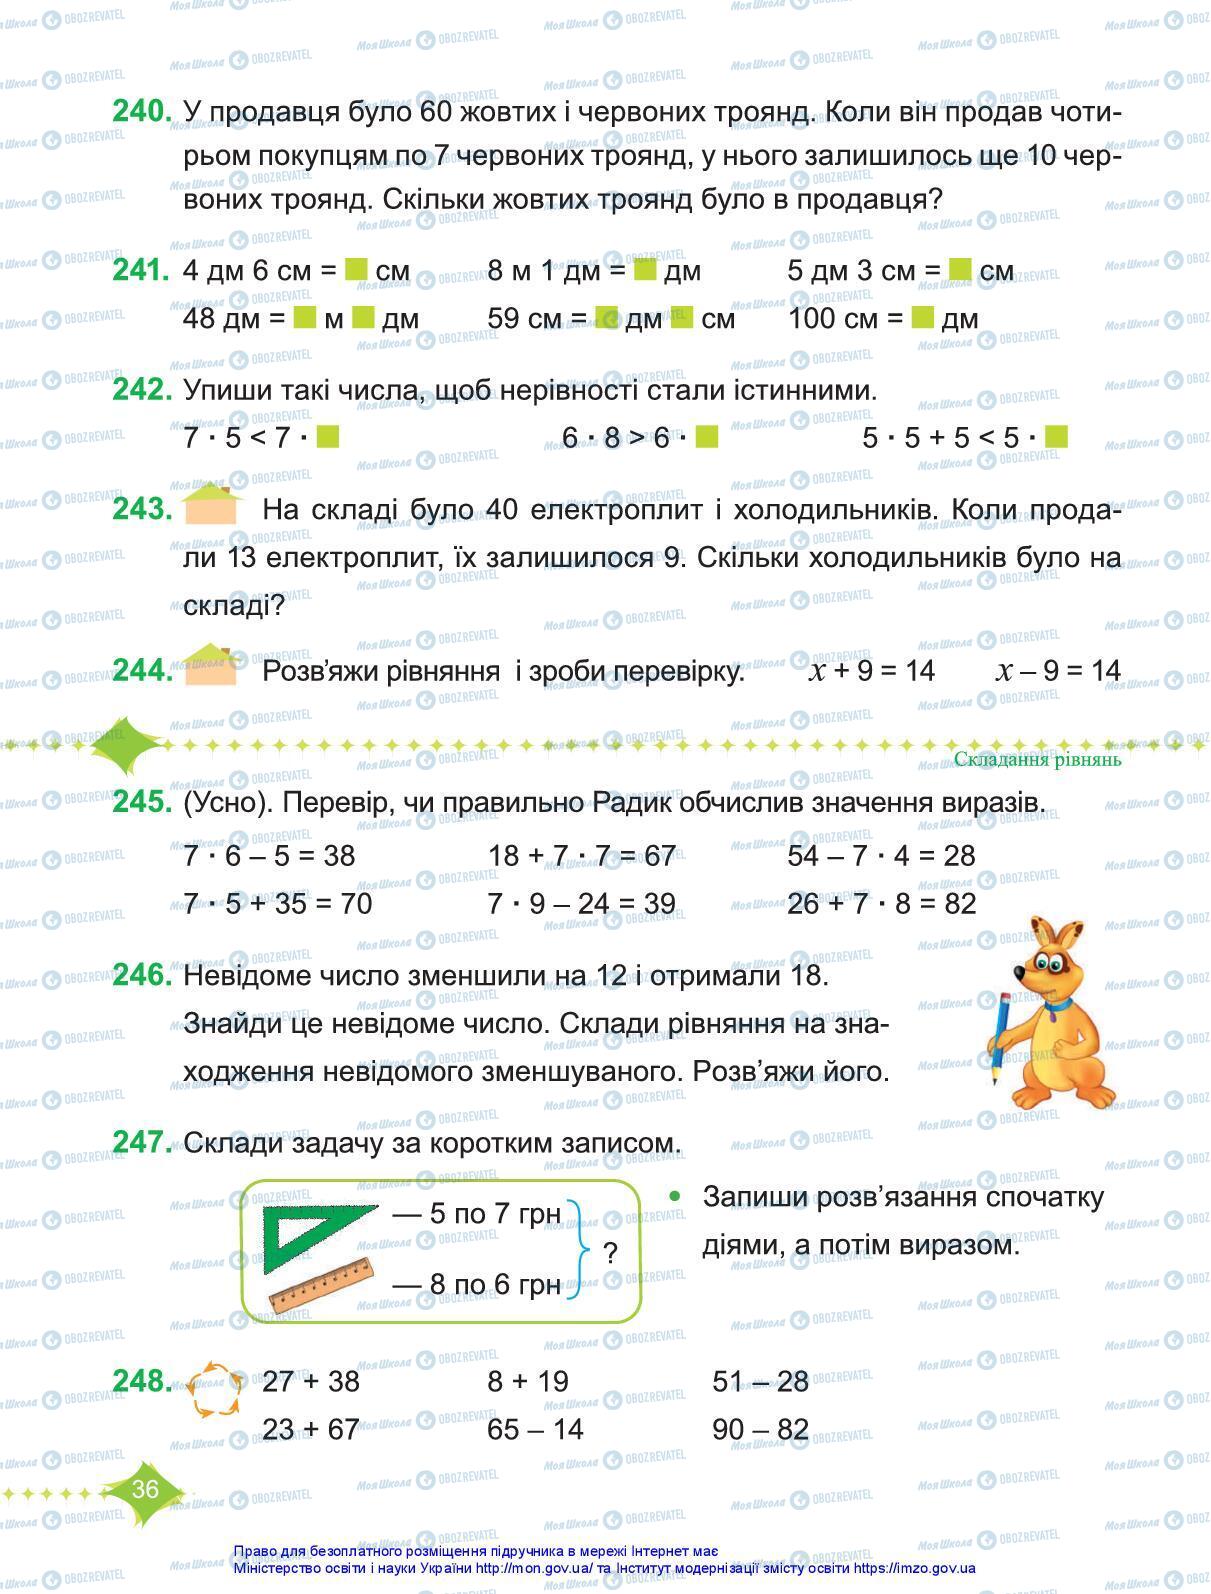 Підручники Математика 3 клас сторінка 36